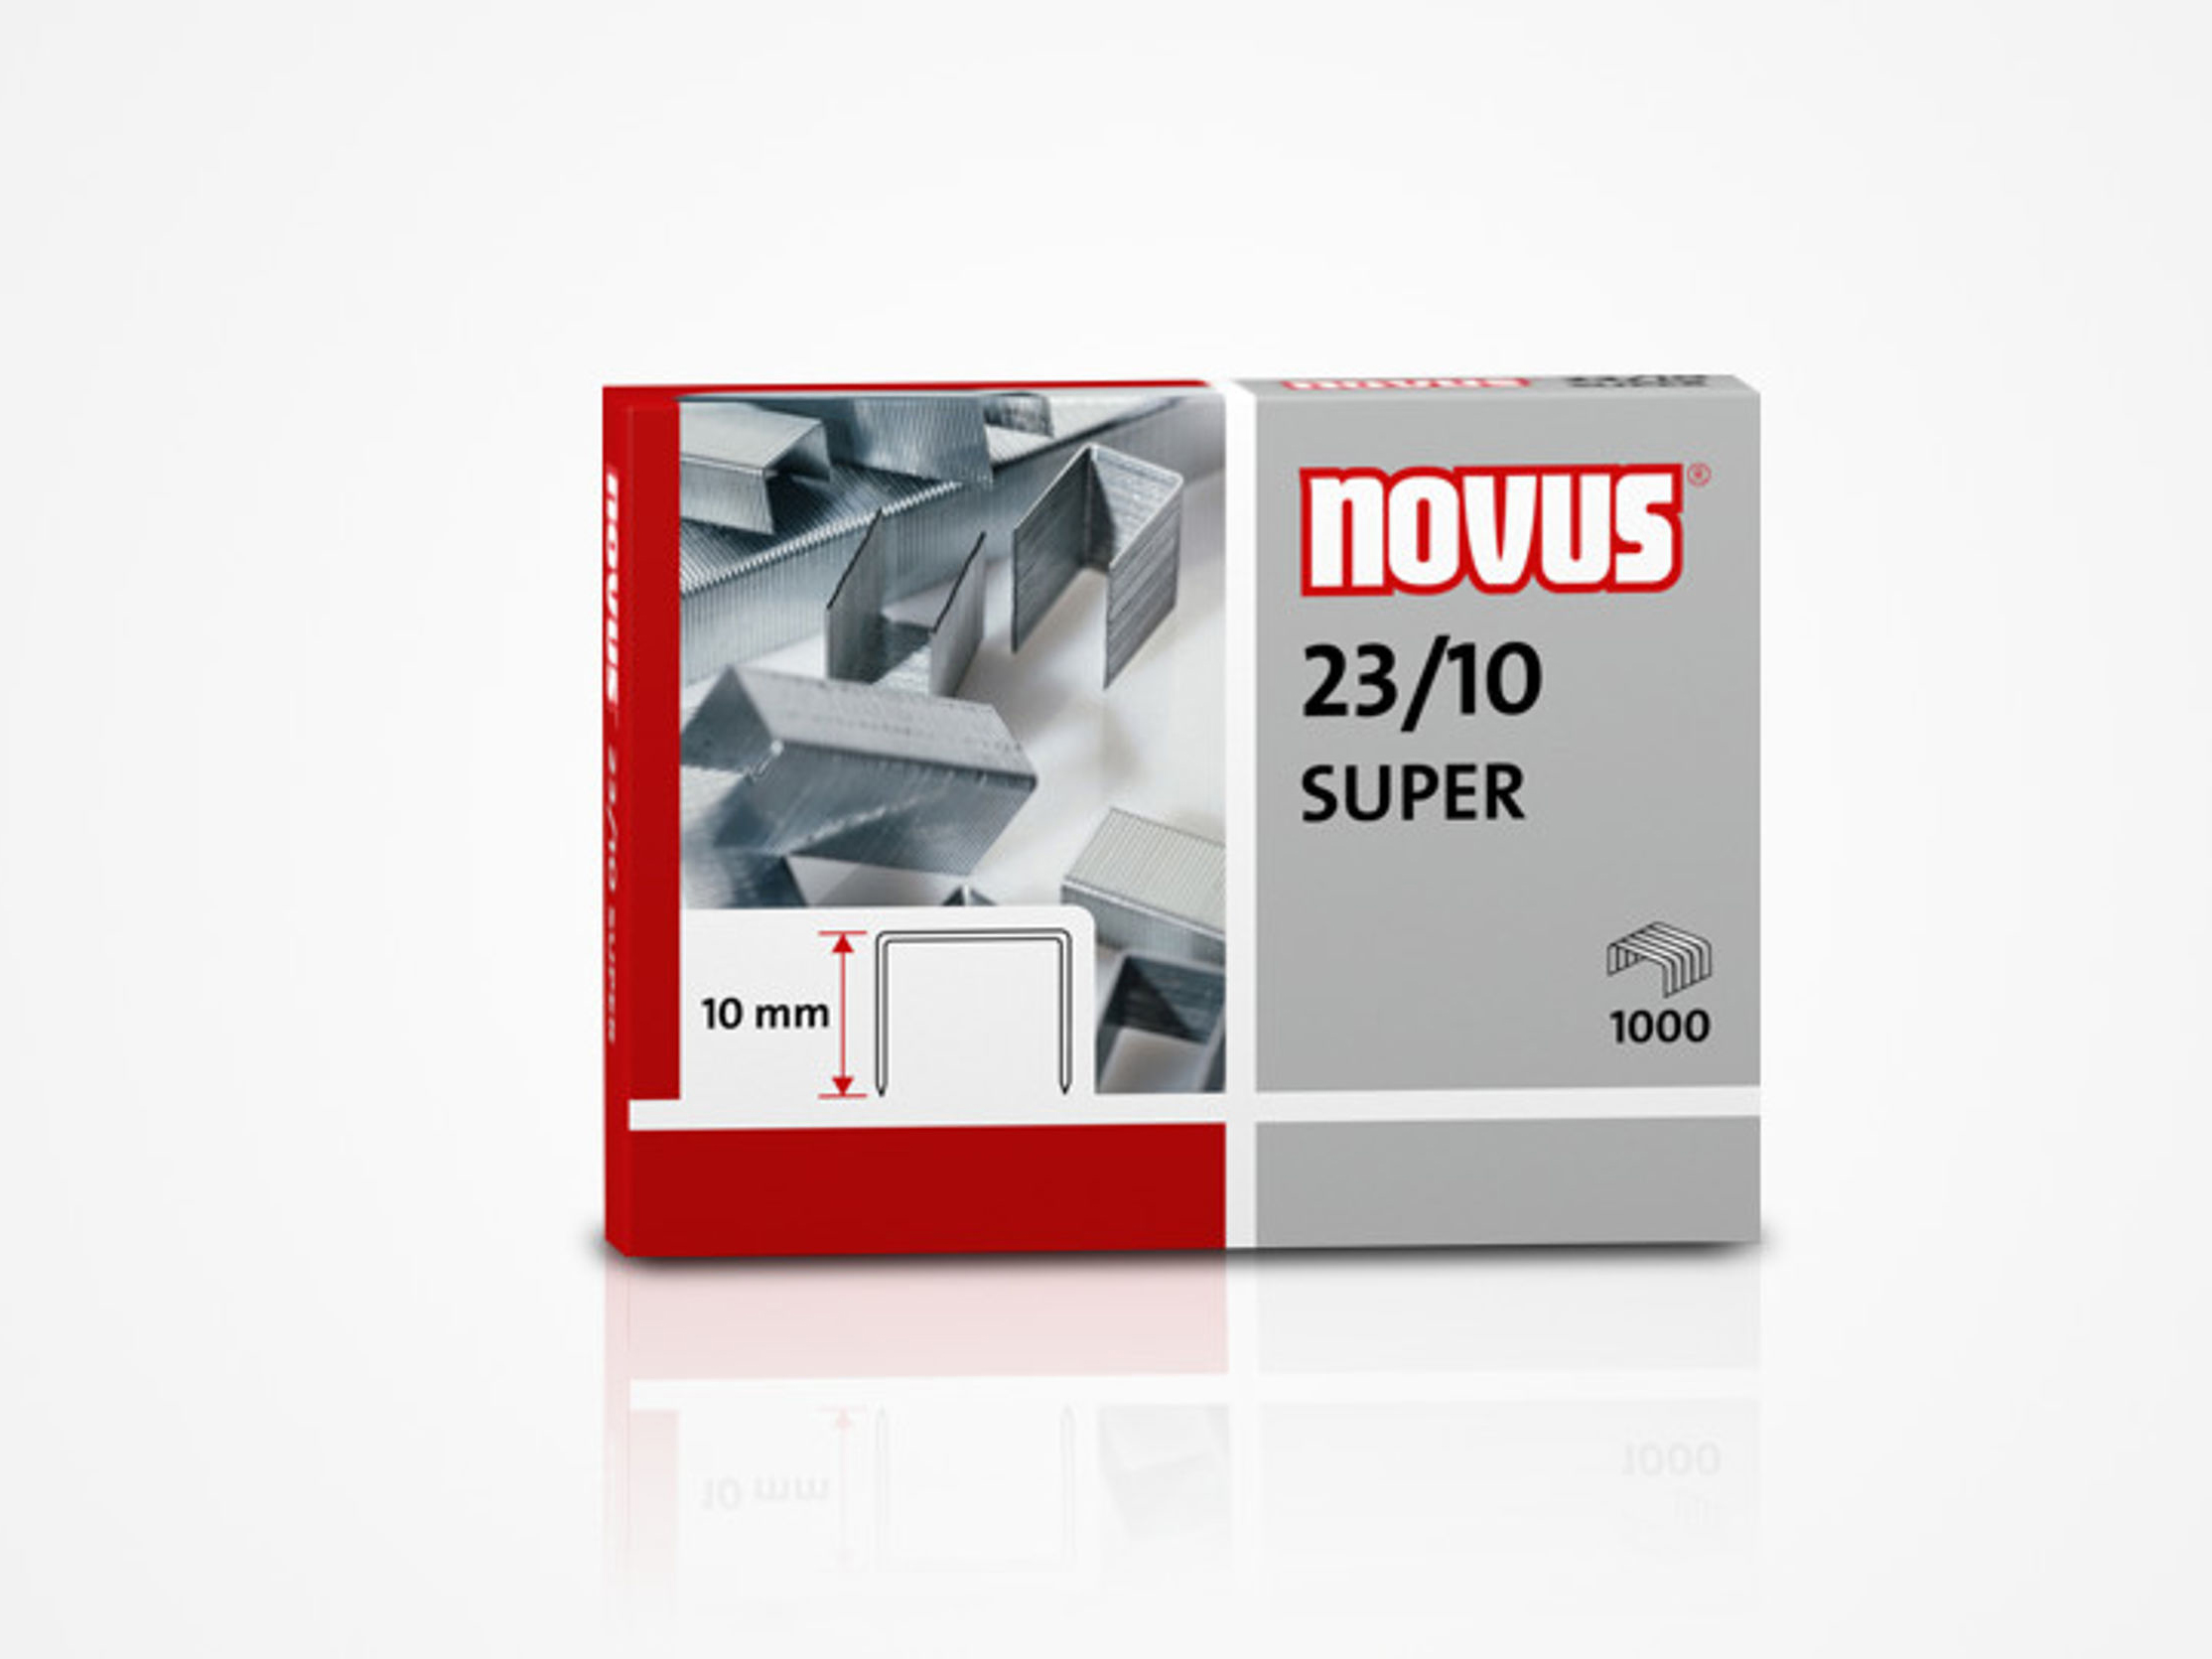 NOVUS NE 8 SUPER